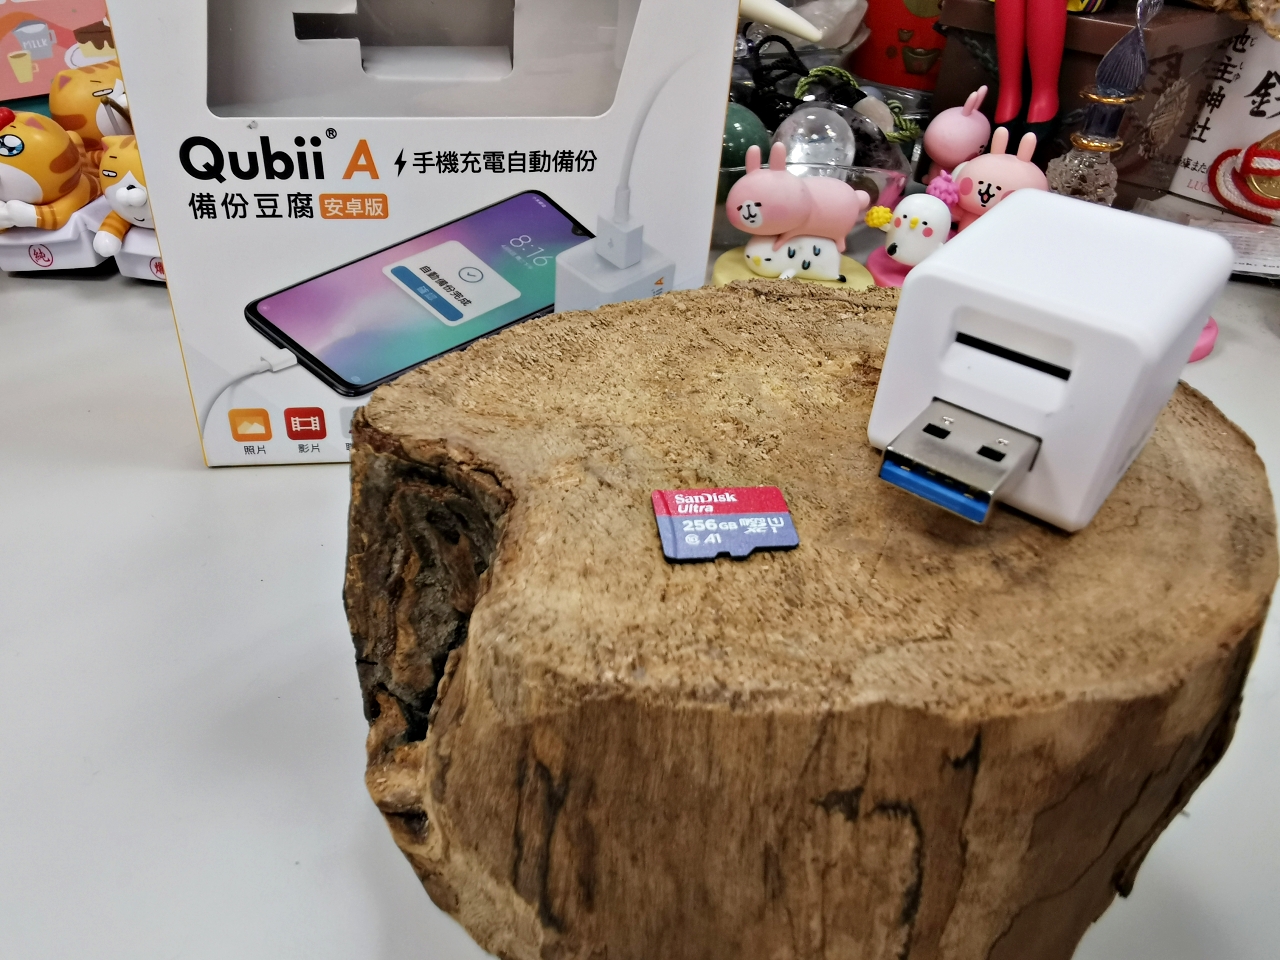 Qubii備份豆腐讓安卓手機邊充電邊備份